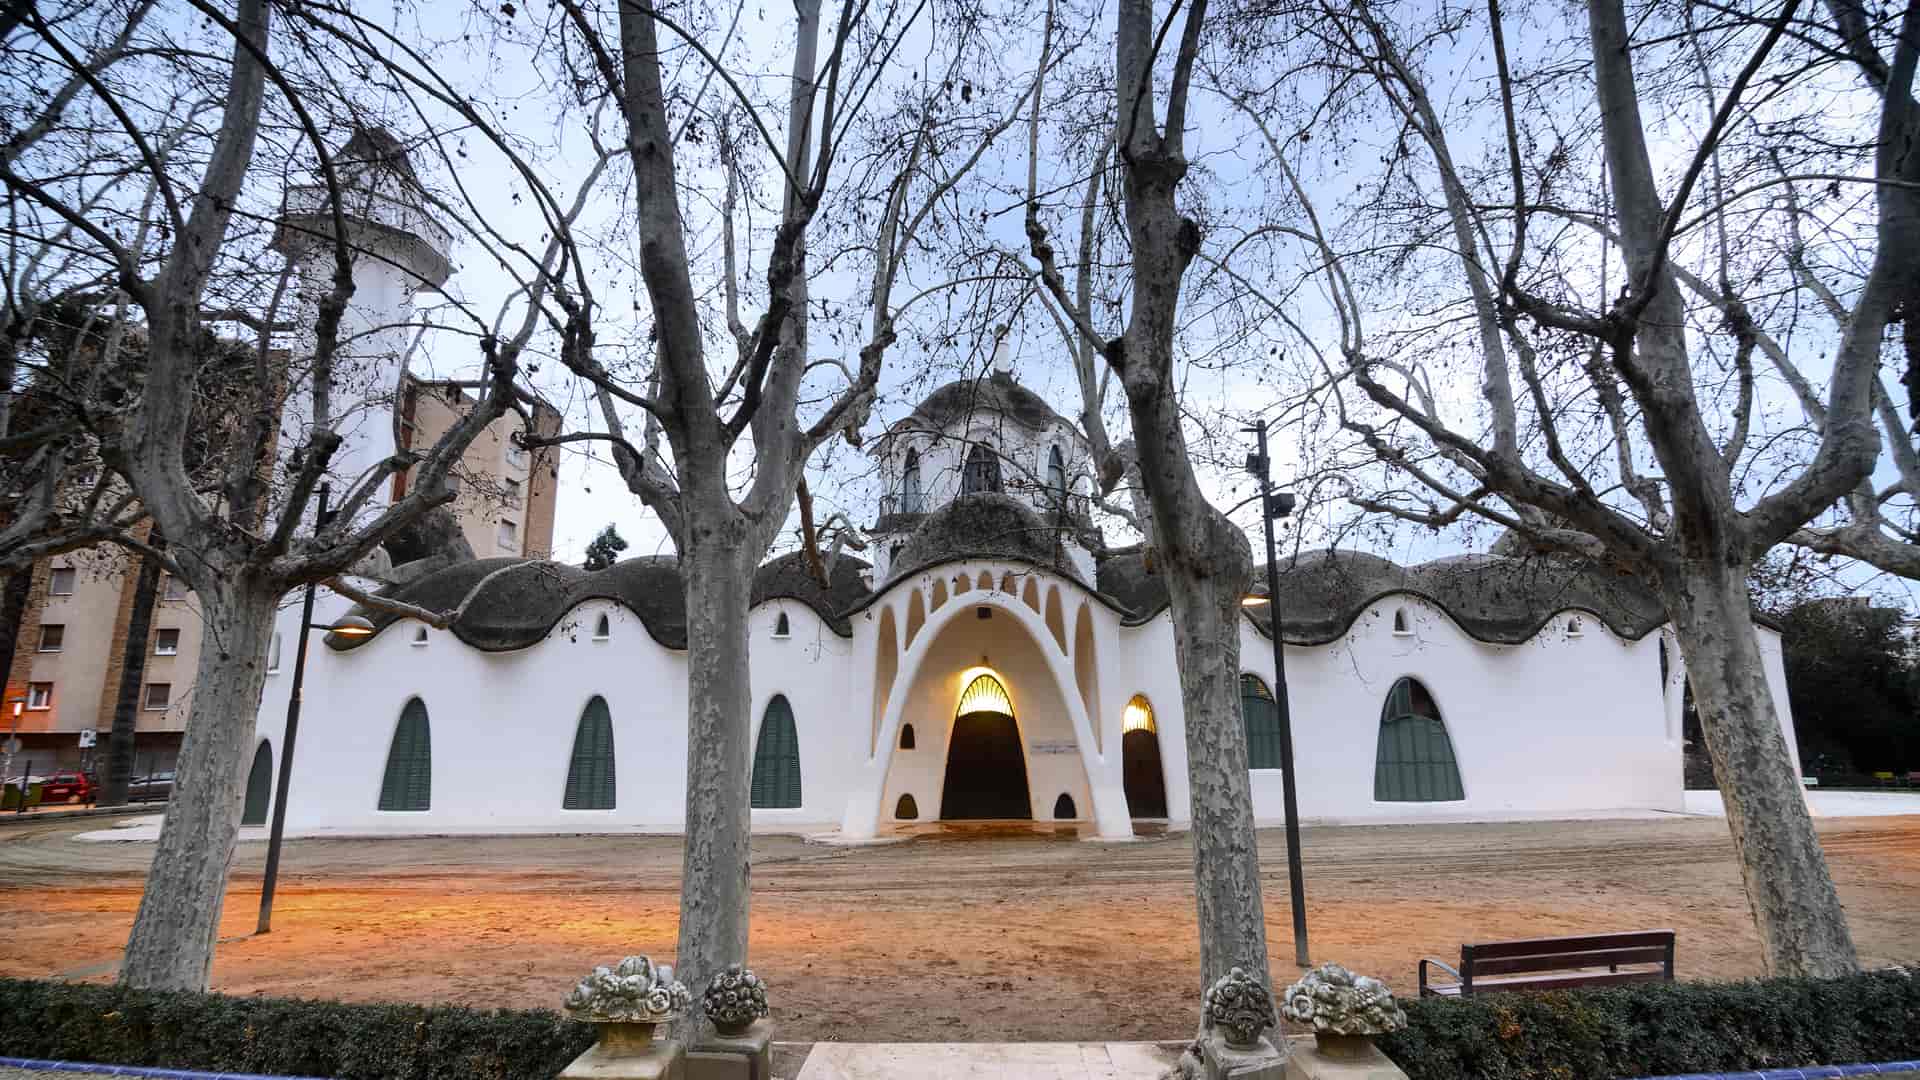 Parque natural Sant Jordi con la masia freixa en la hermosa ciudad de Terrassa donde hay disponible jazztel